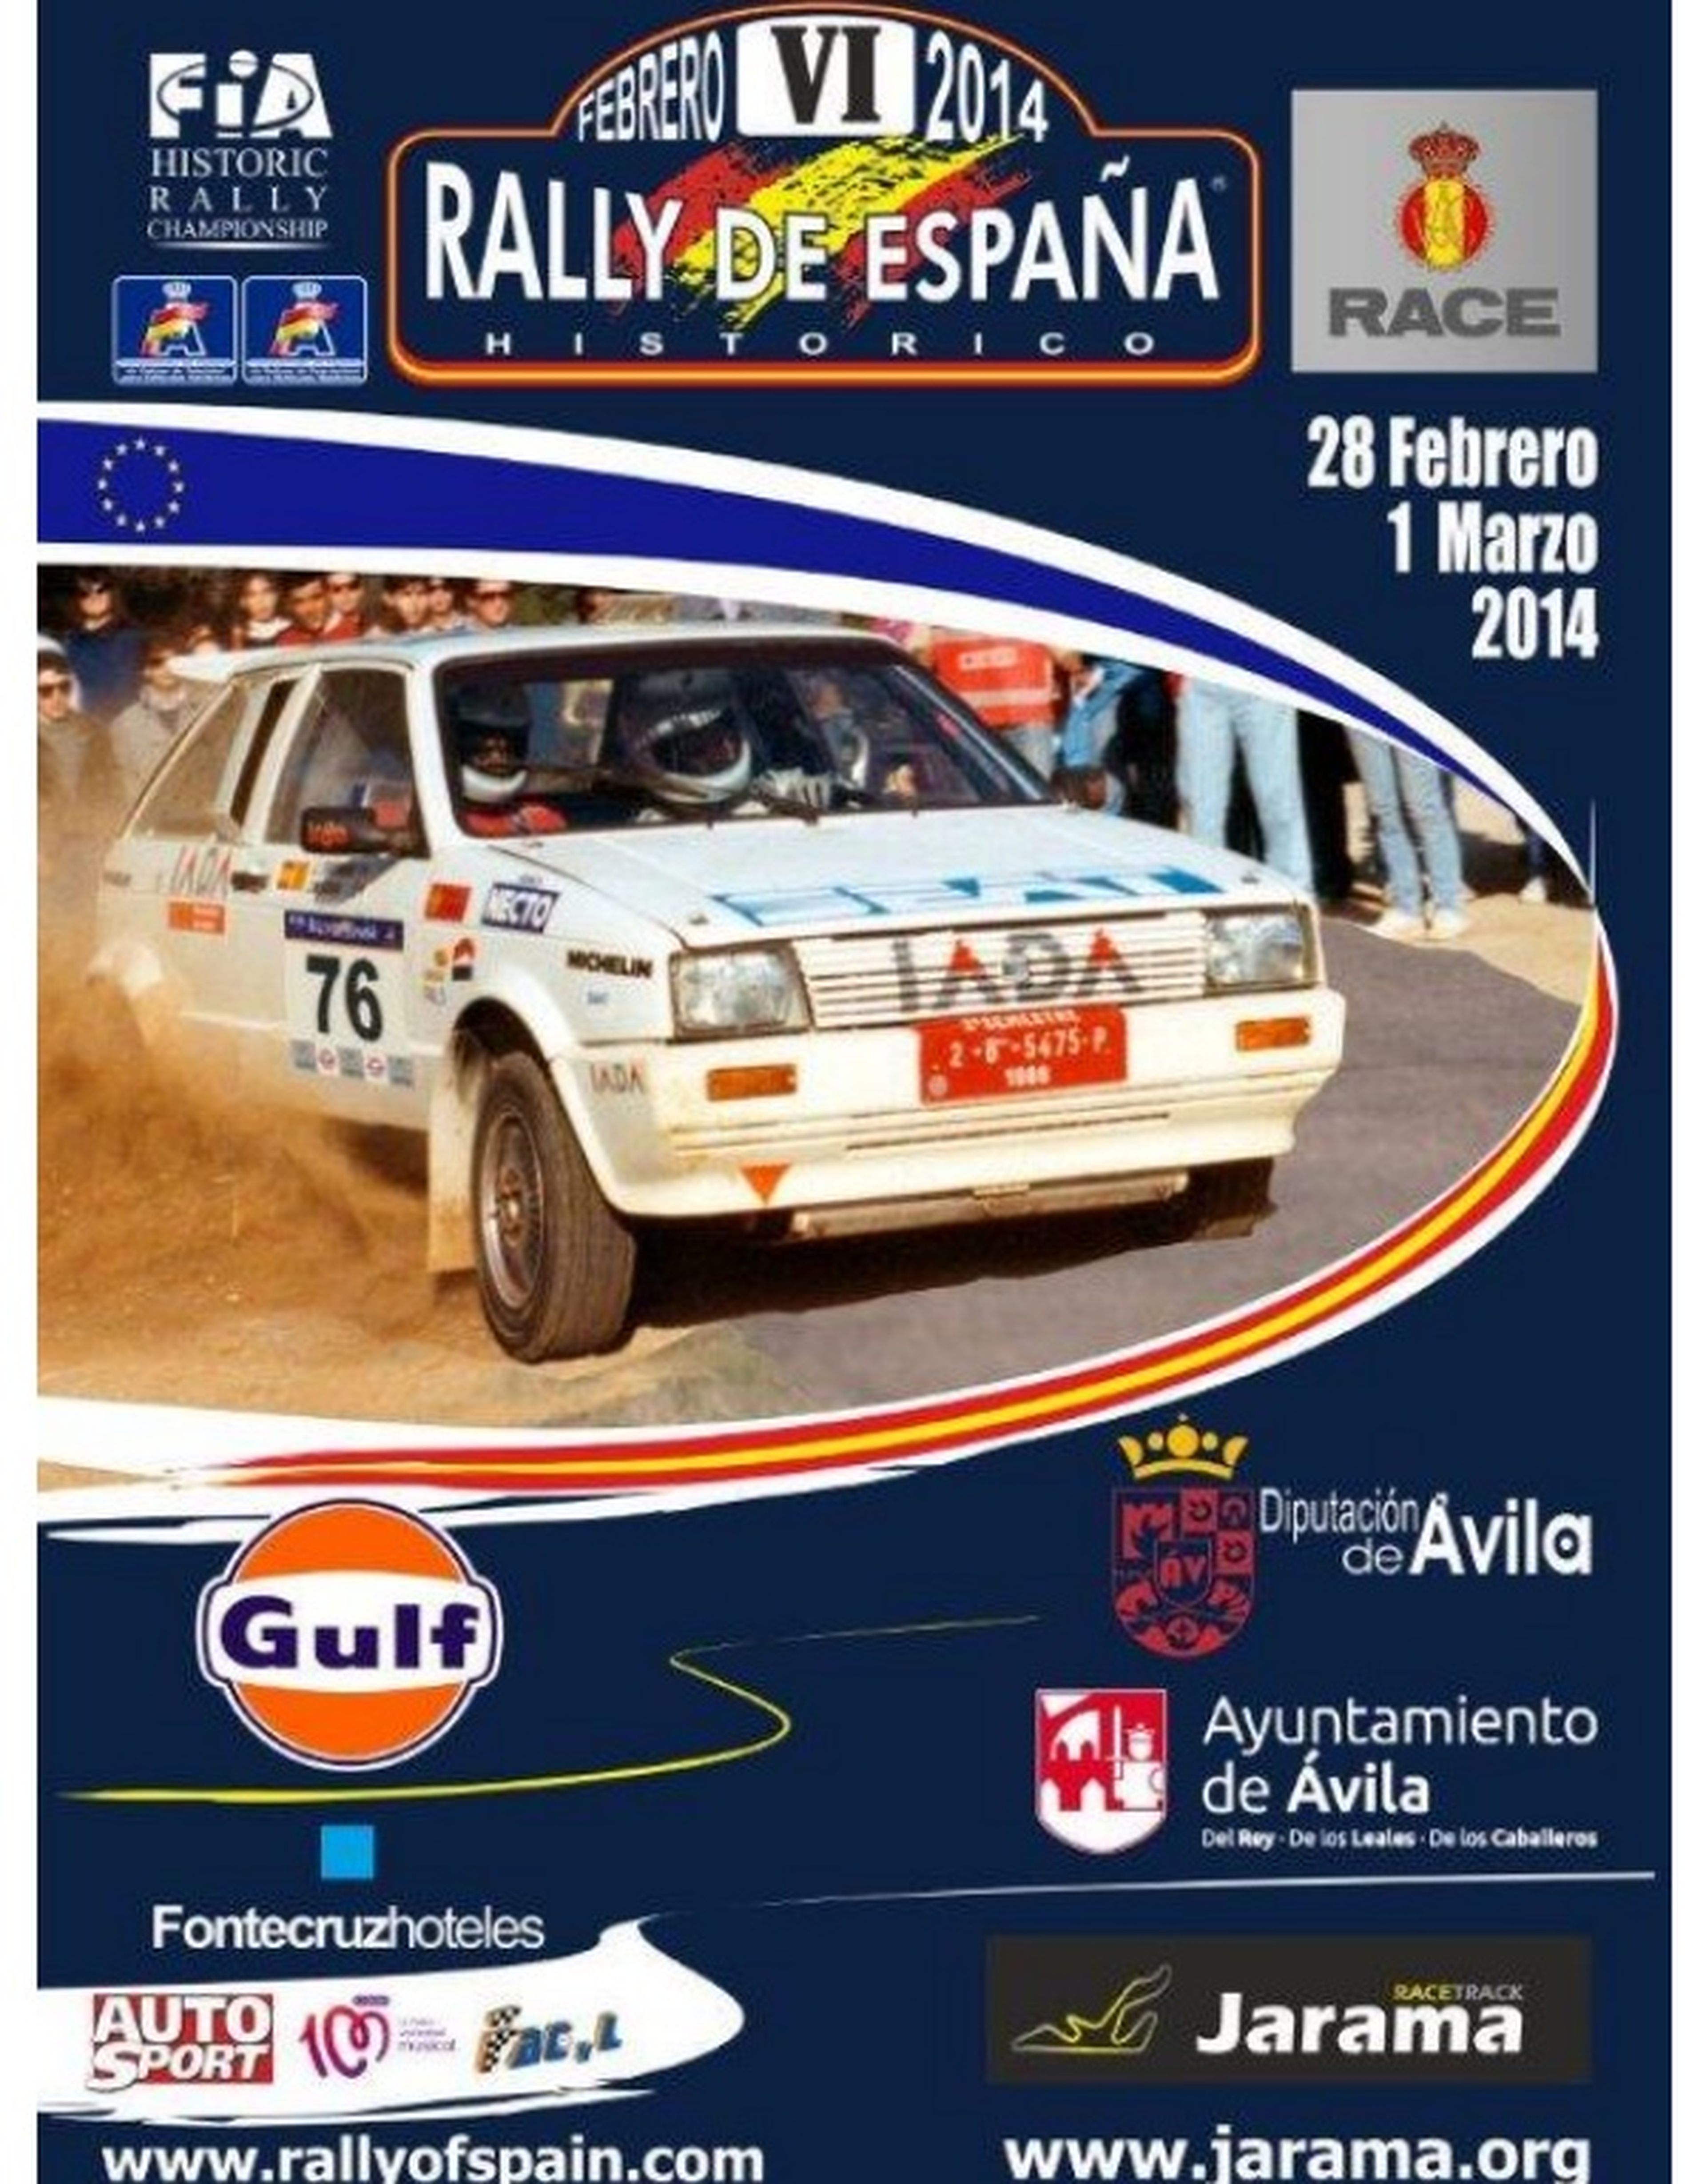 Rally España Históricos 2014 cartel